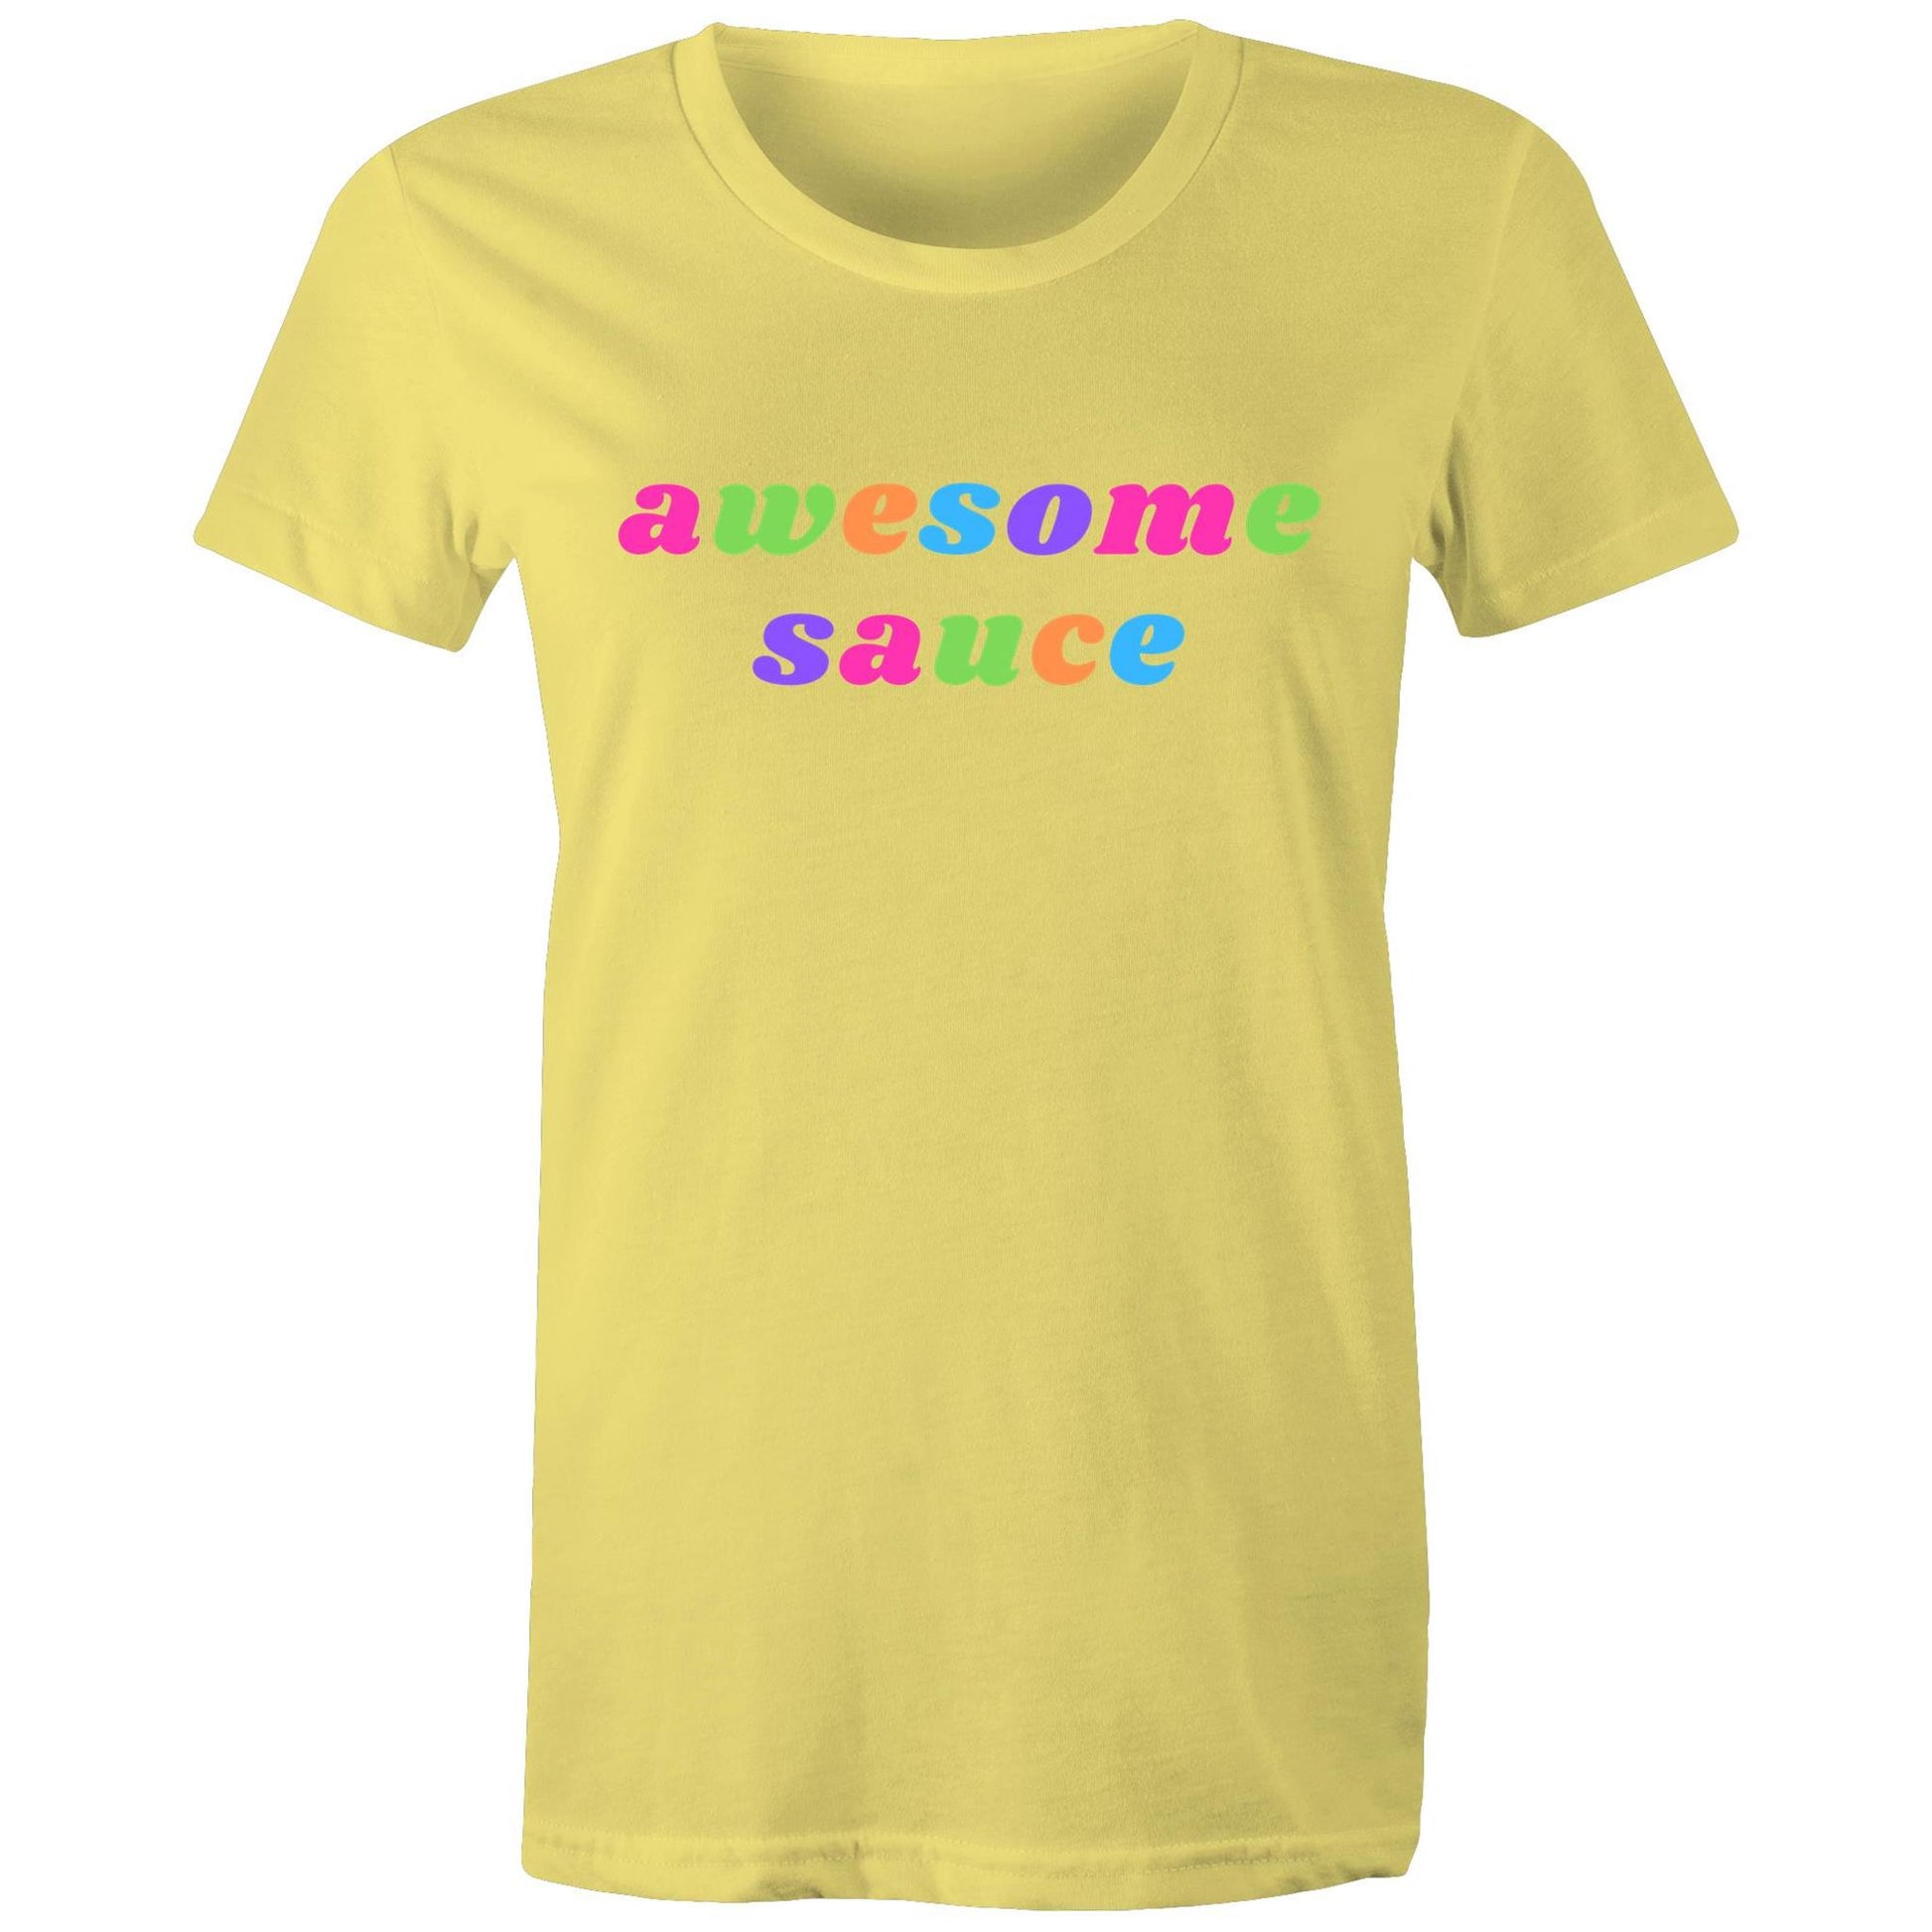 Awesome Sauce - Women's T-shirt Yellow Womens T-shirt Funny Womens